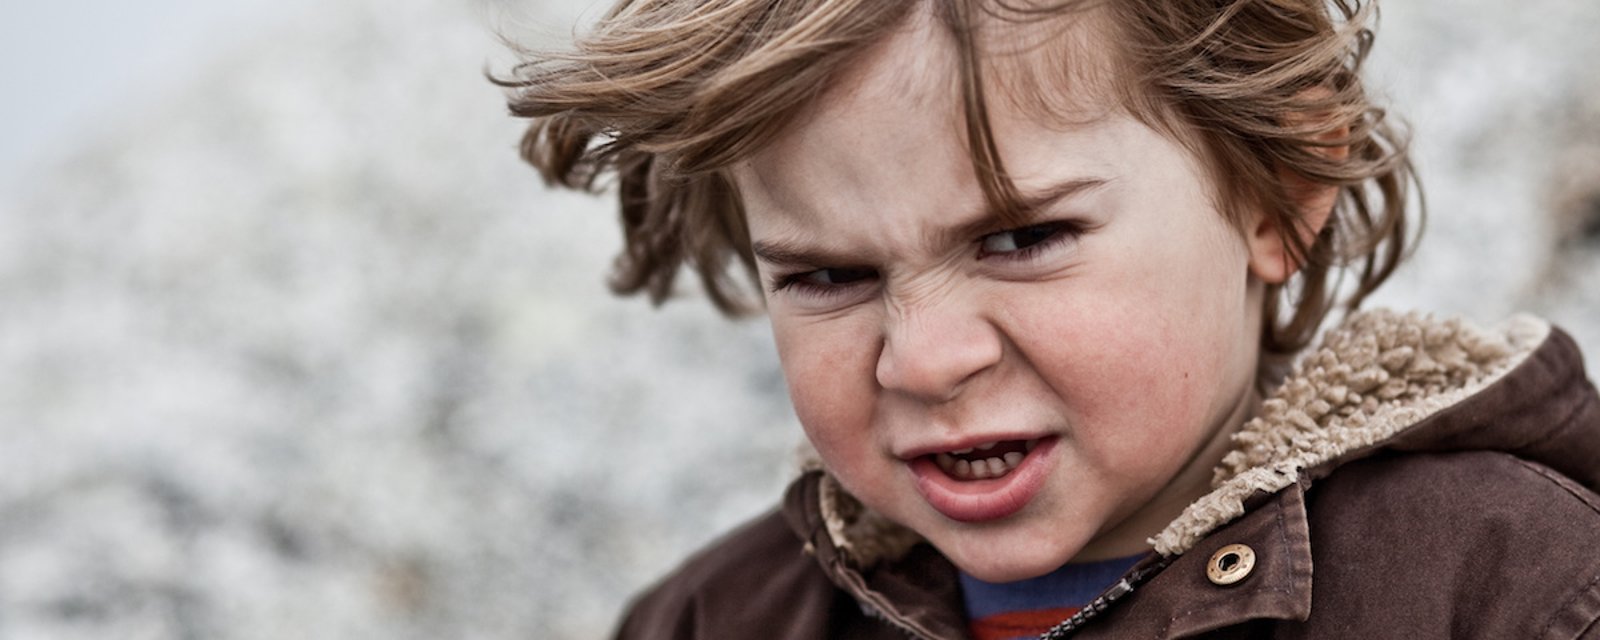 8 habitudes enfantines qui peuvent nous taper sur les nerfs, mais qui sont tout à fait normales!